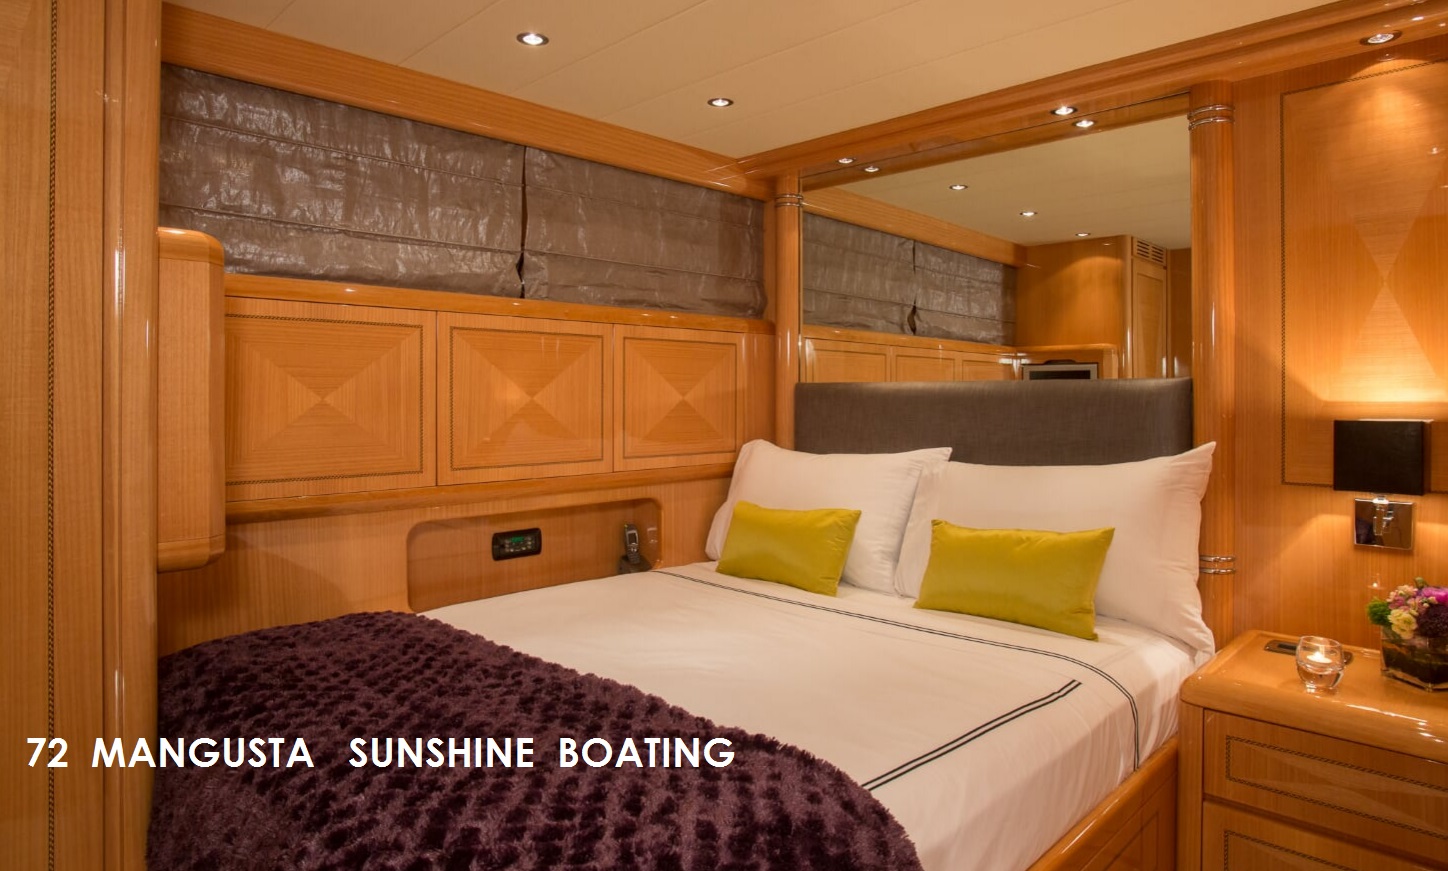 sunshine-boating-manusta-72-p